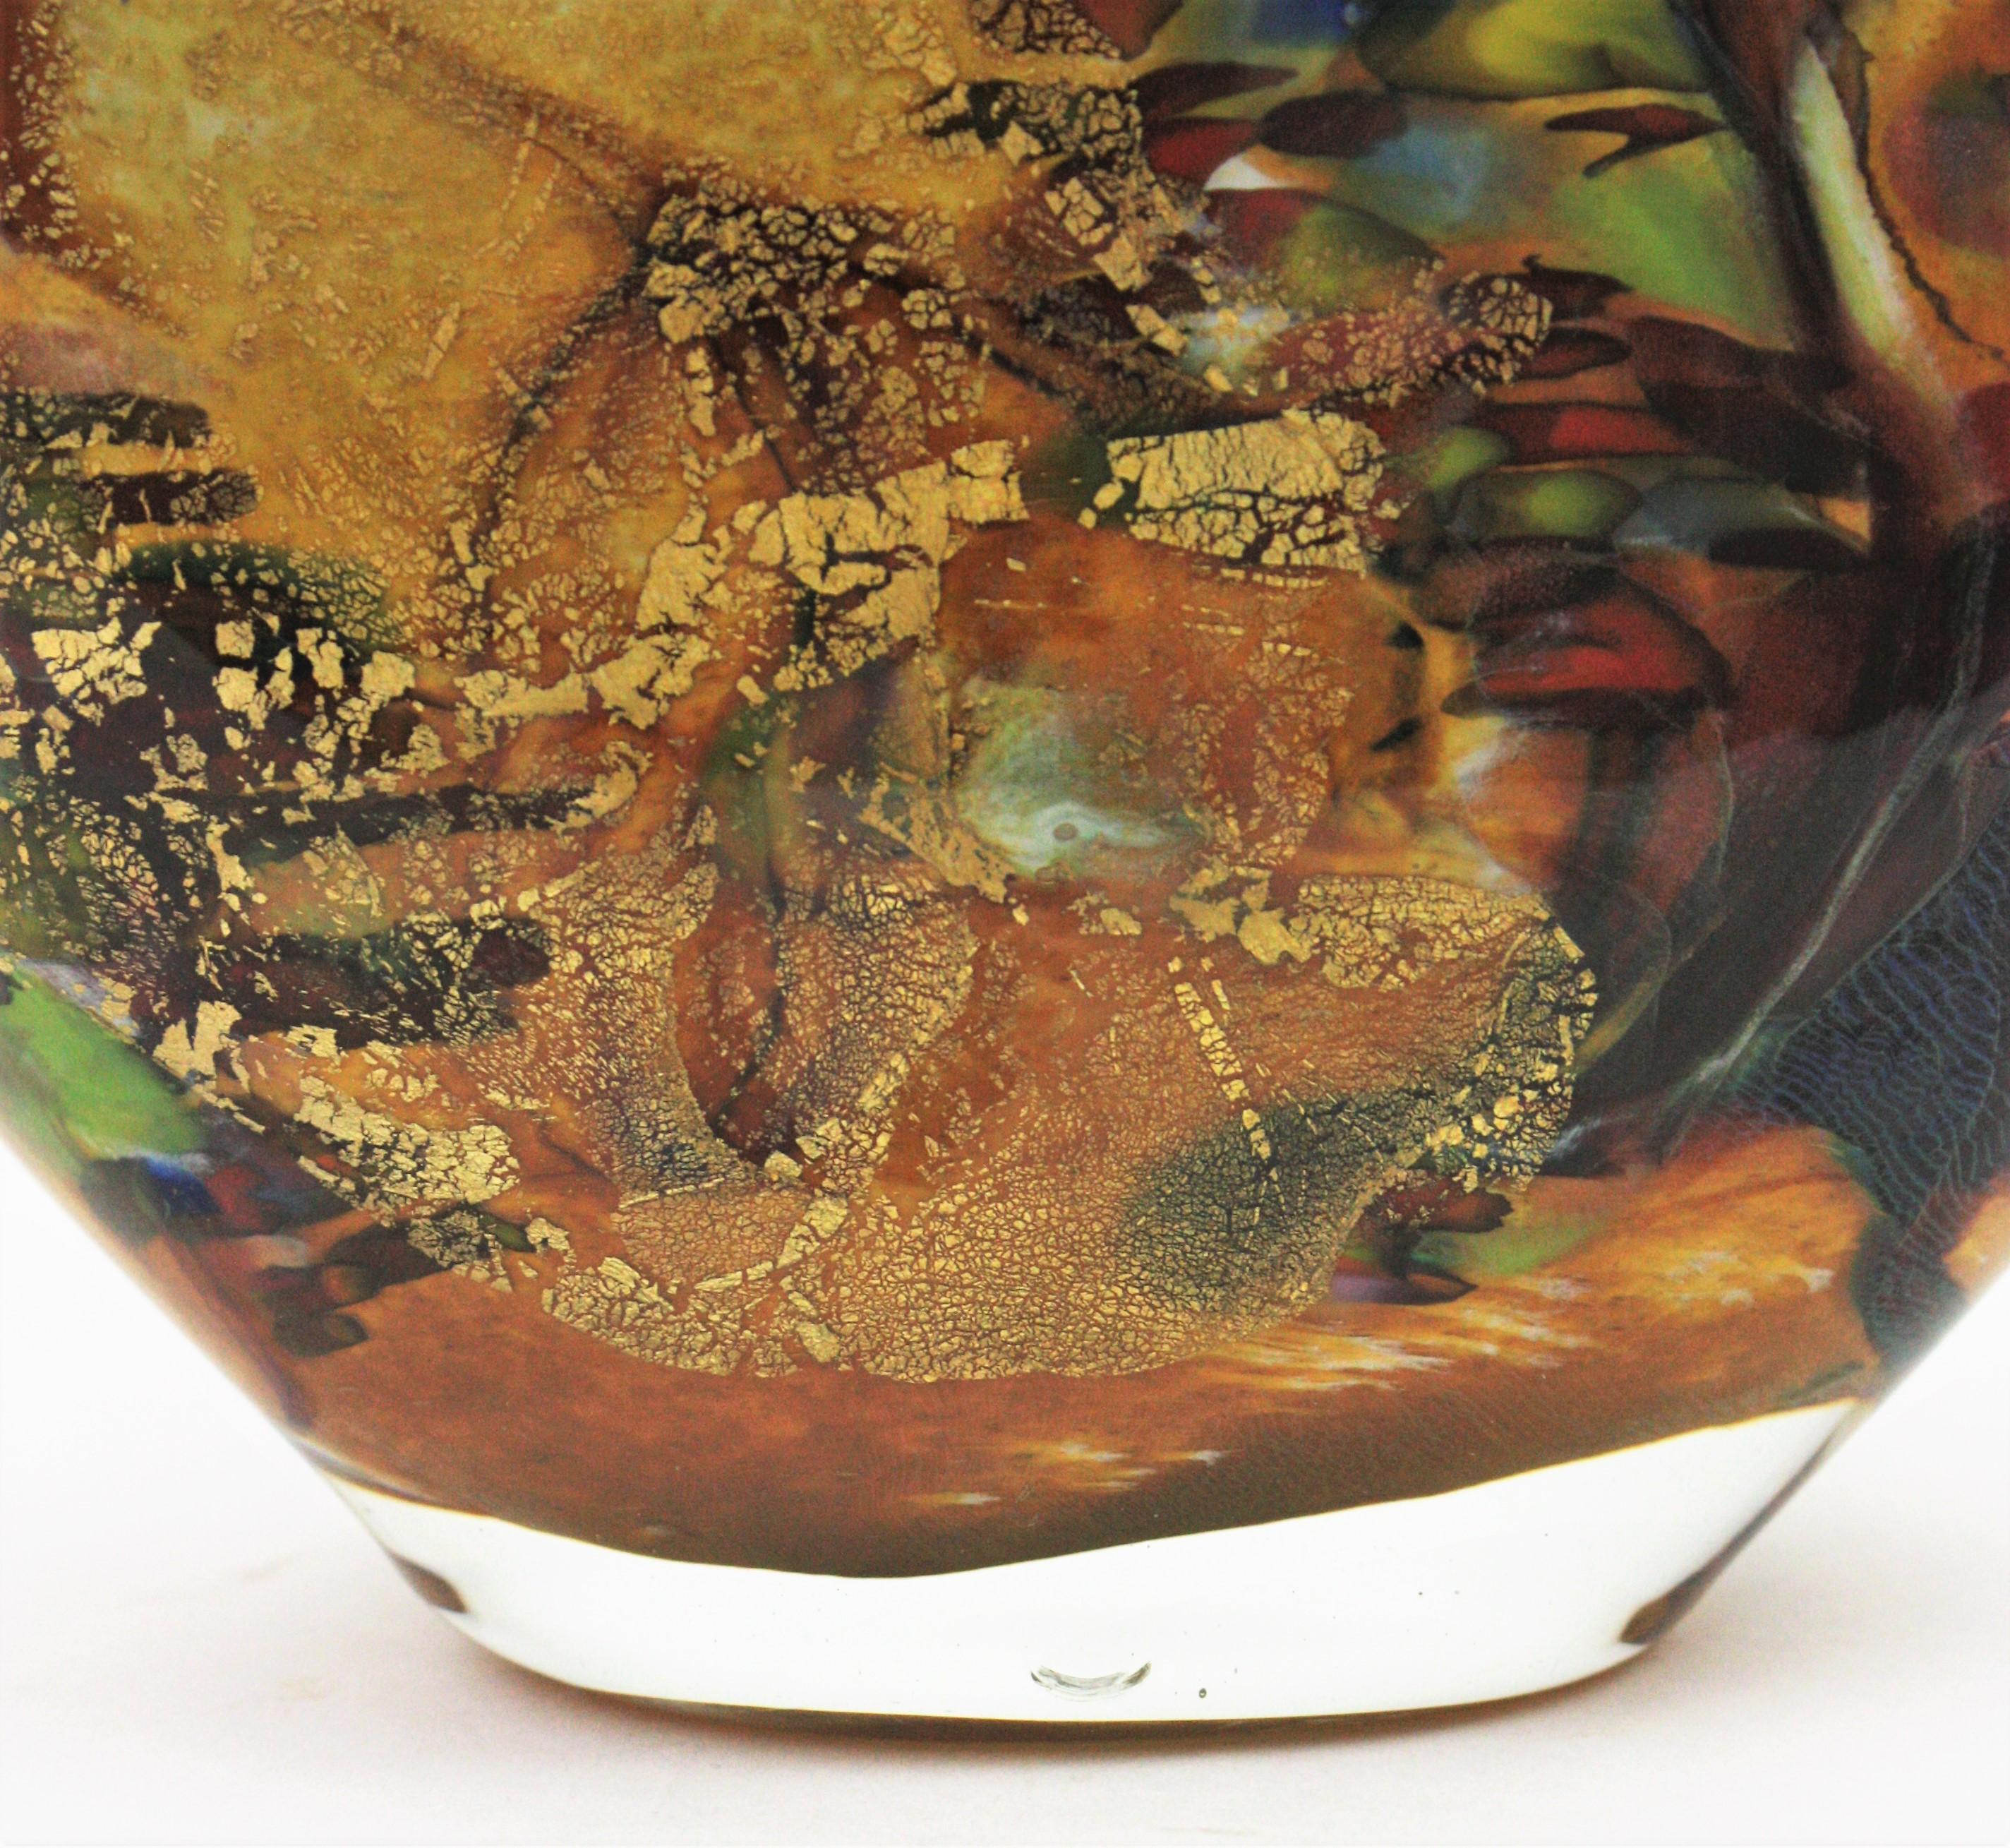 AVEM Murano Tutti Frutti Murrine Multicolor Art Glass Vase, 1950s  For Sale 4